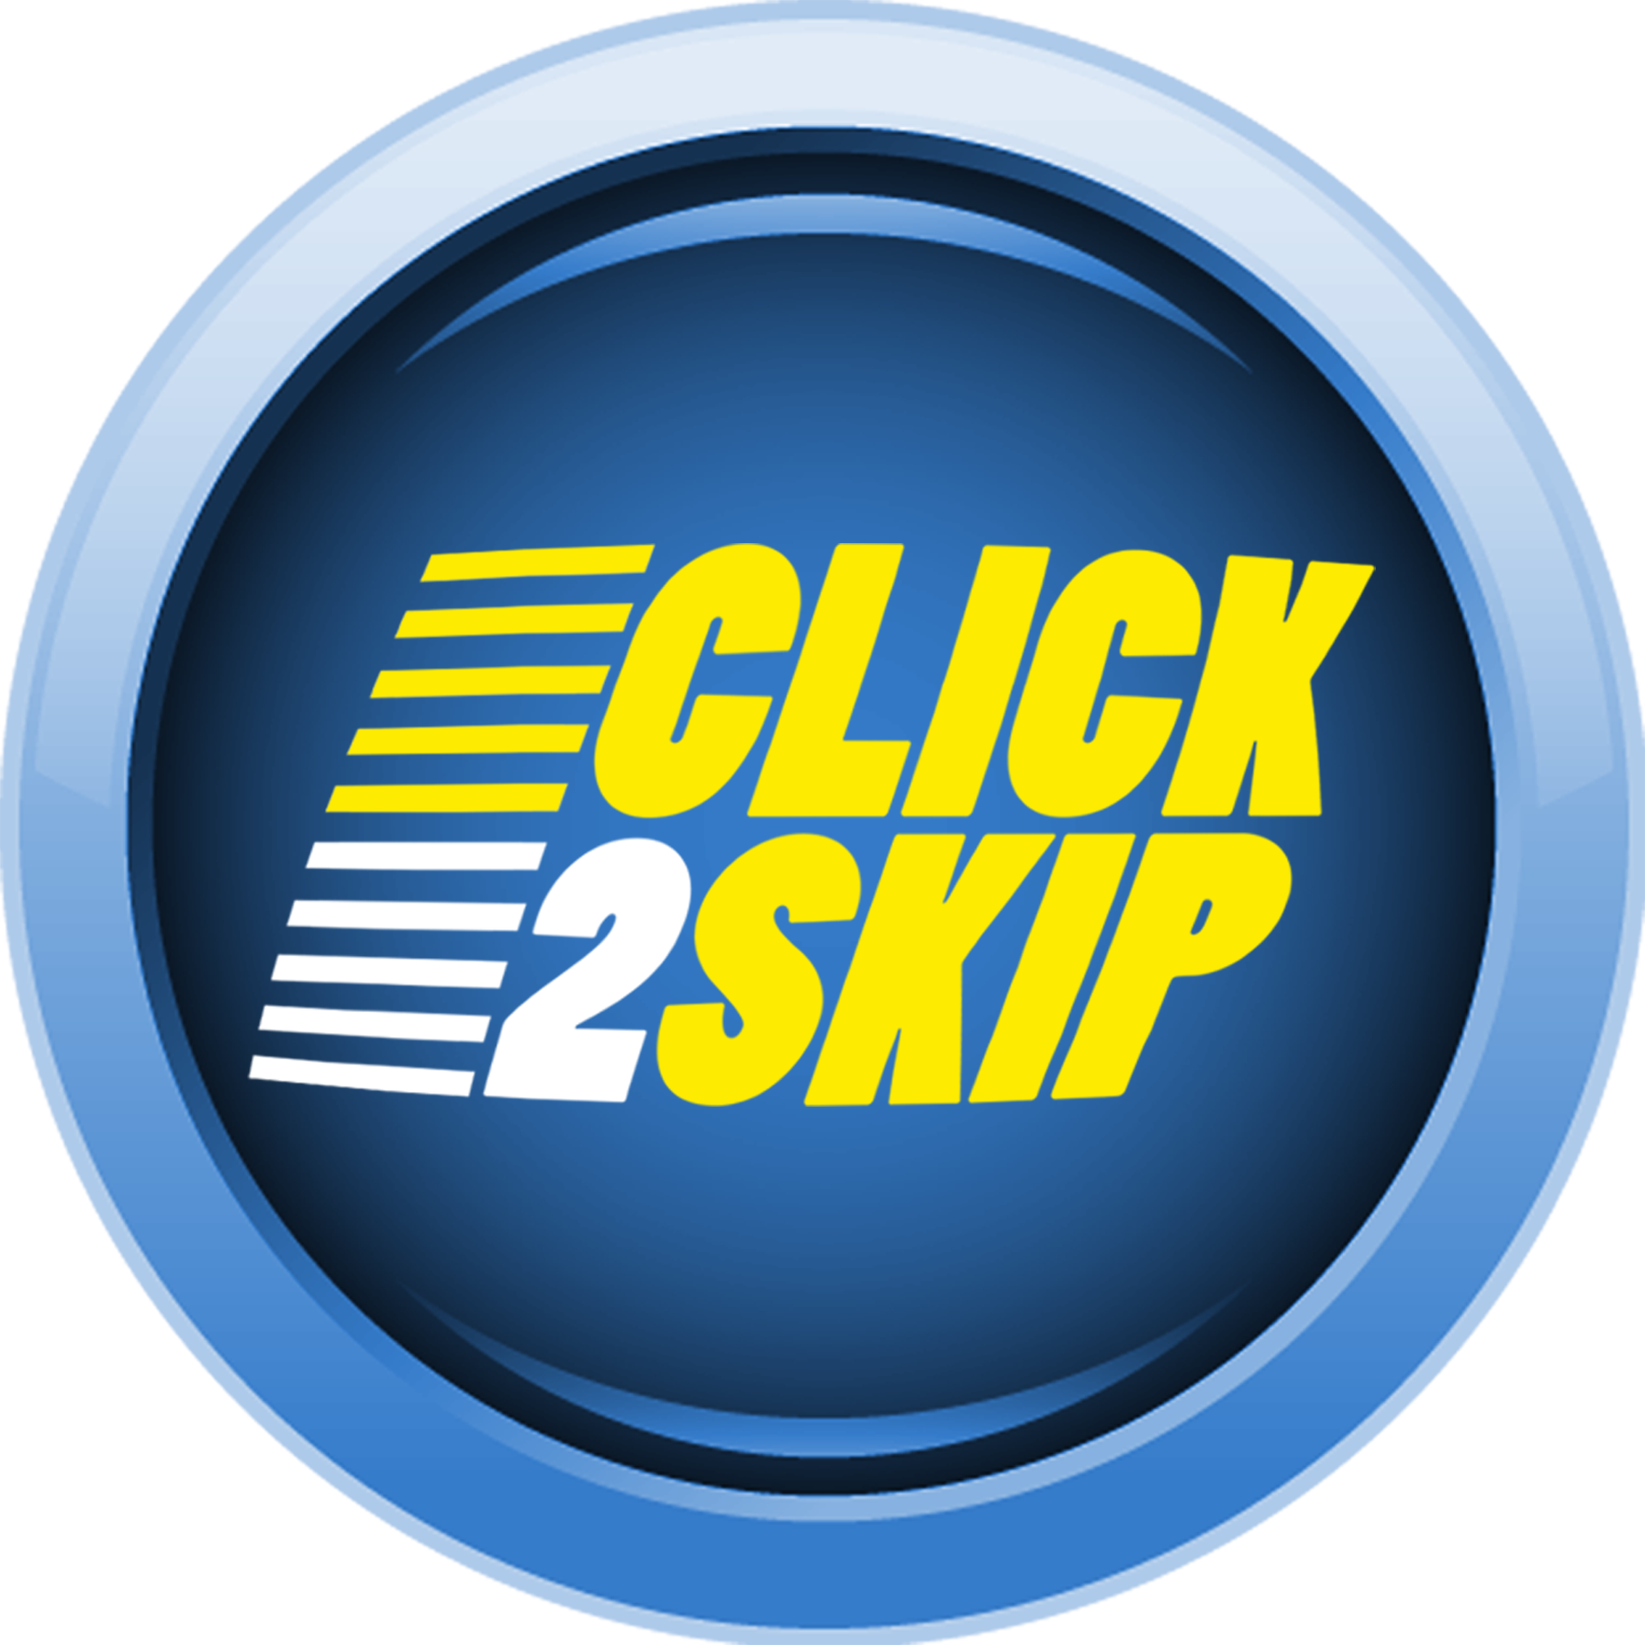 click2skip